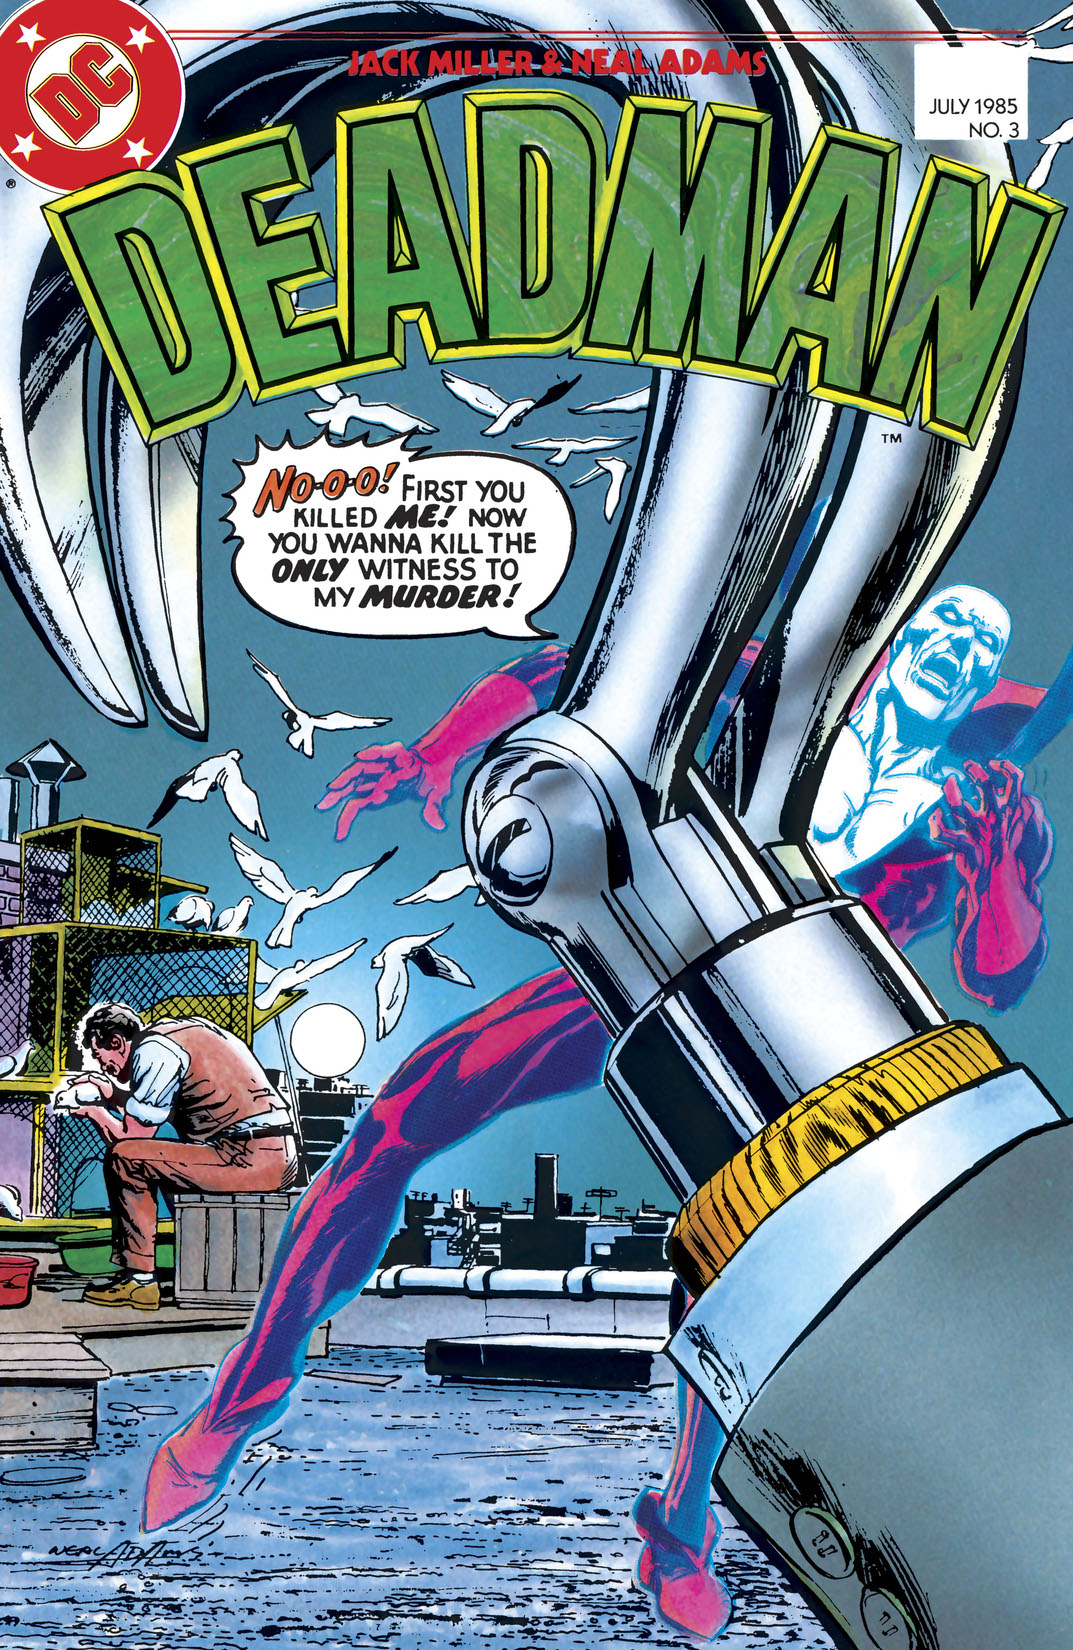 Deadman (1985-1985) #3 preview images